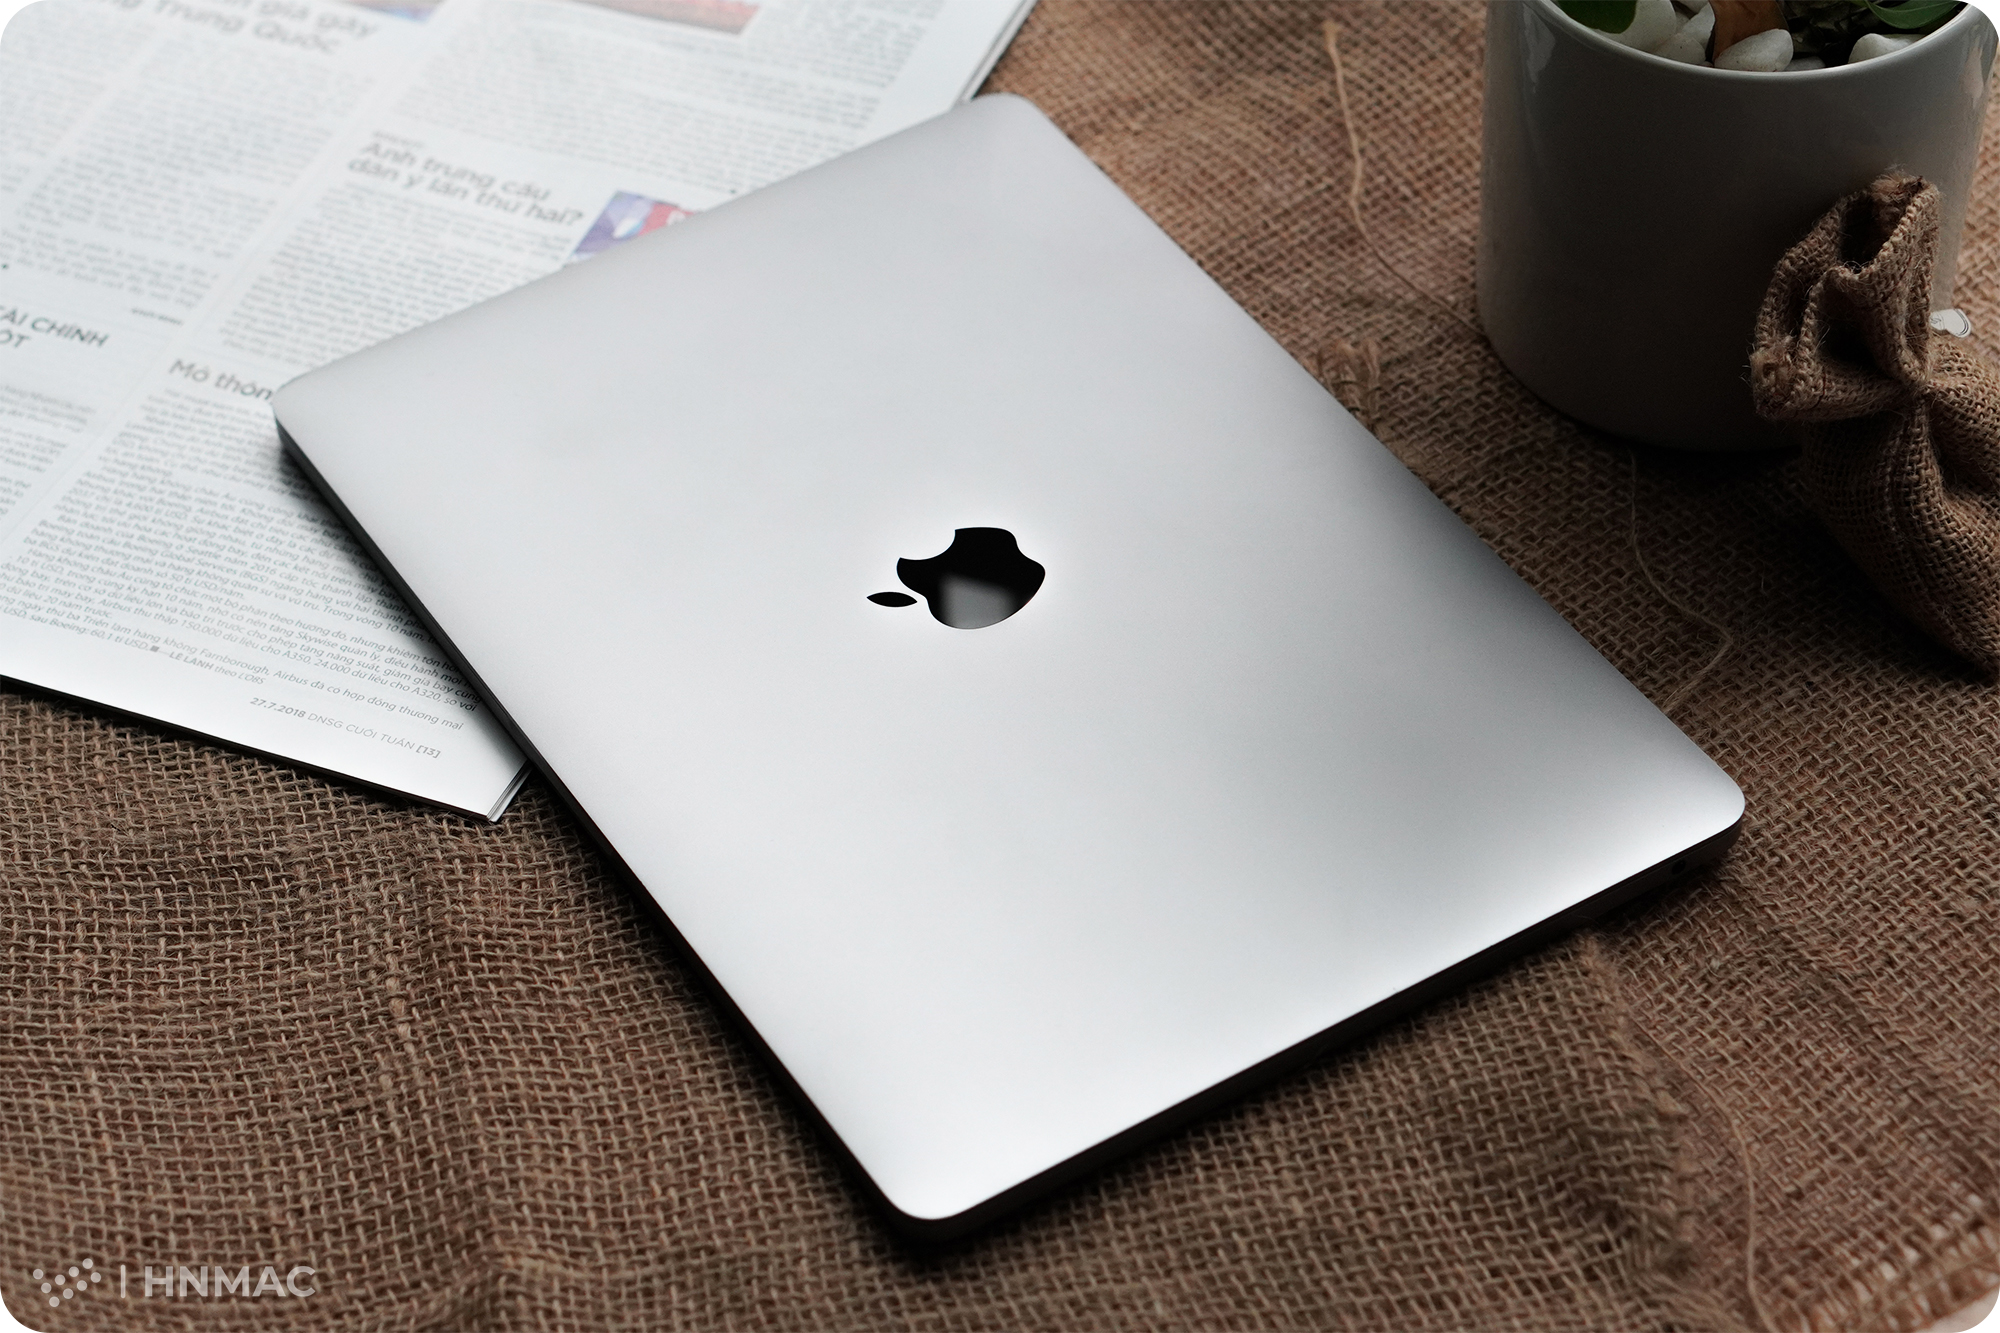 Macbook pro 13 inch 2017